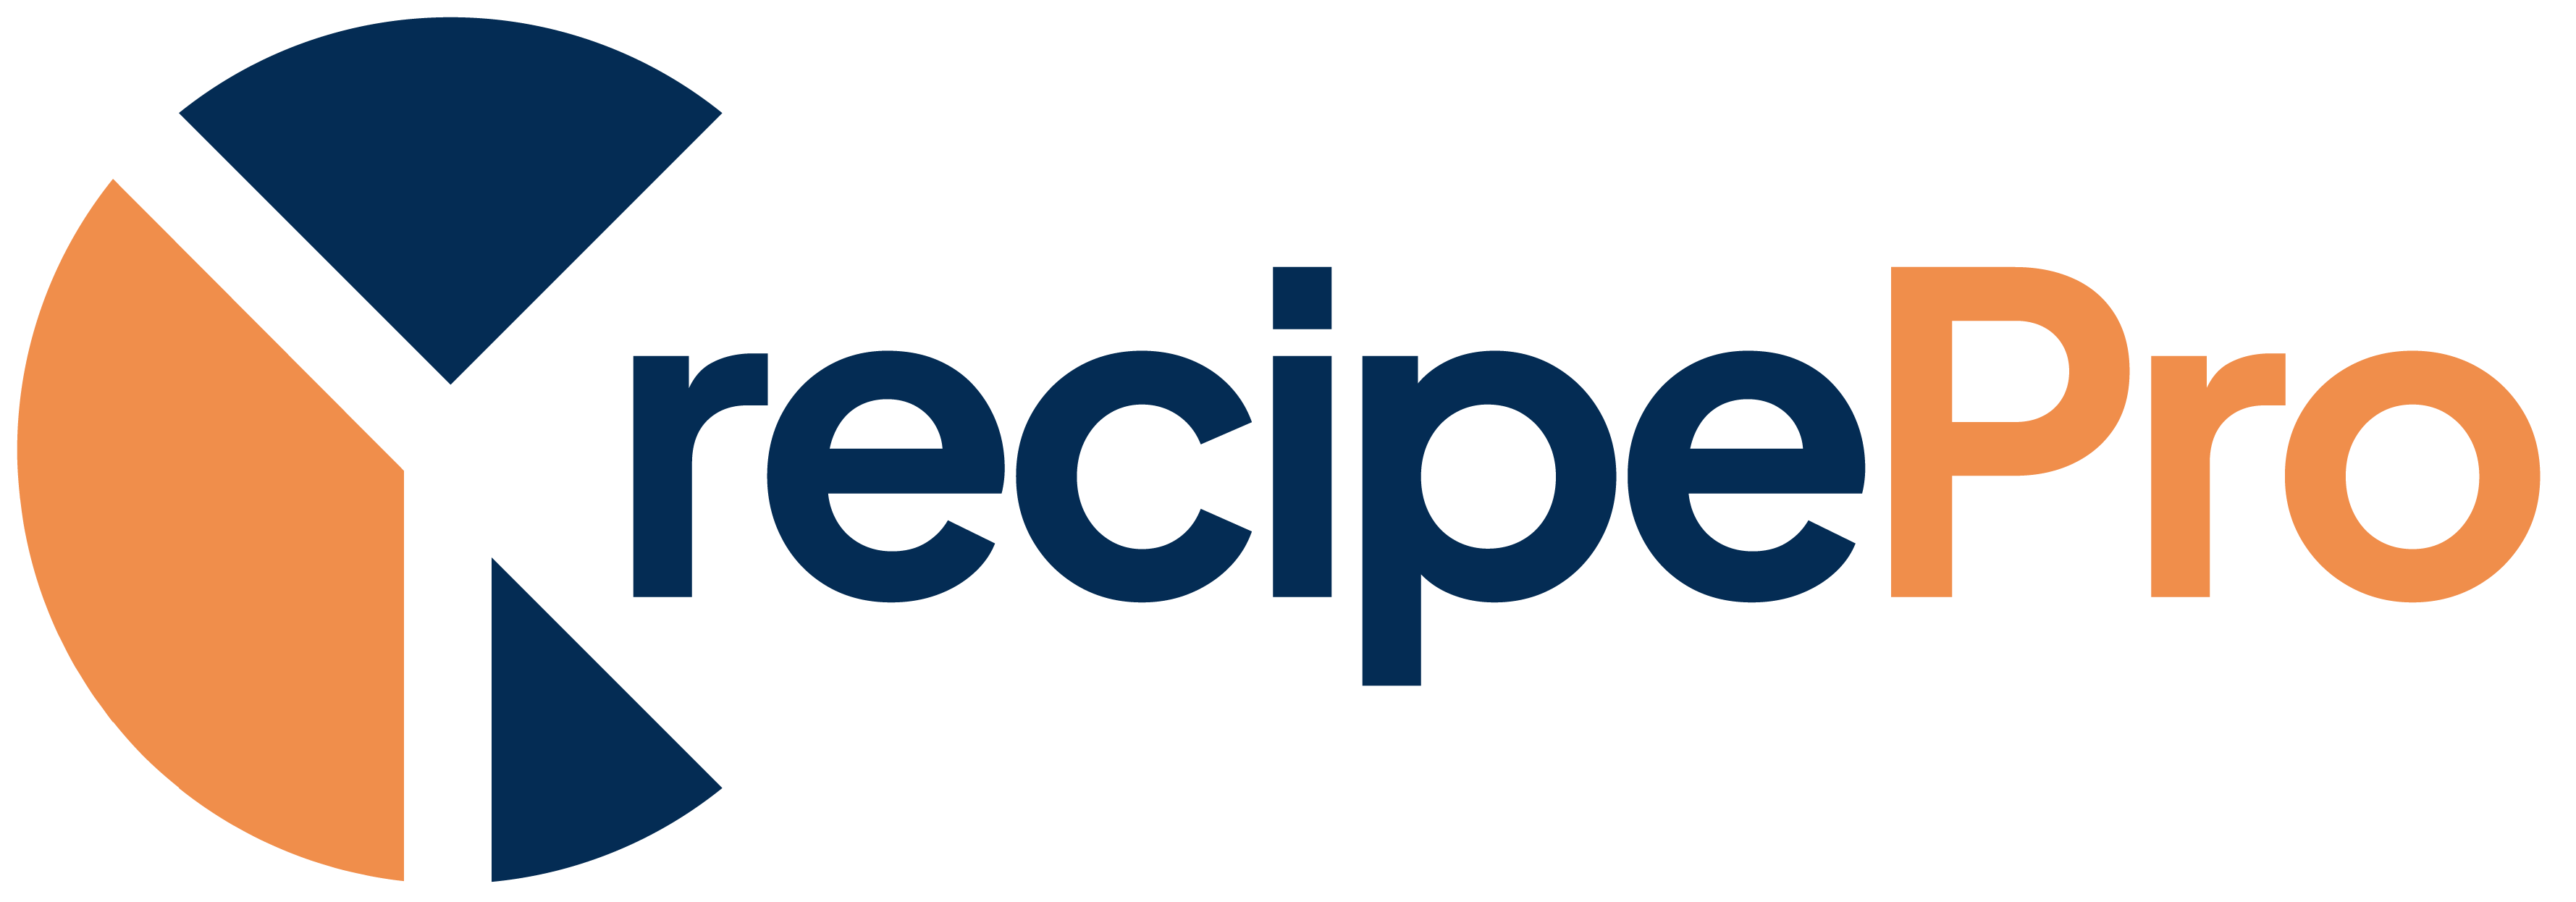 RecipePro logo